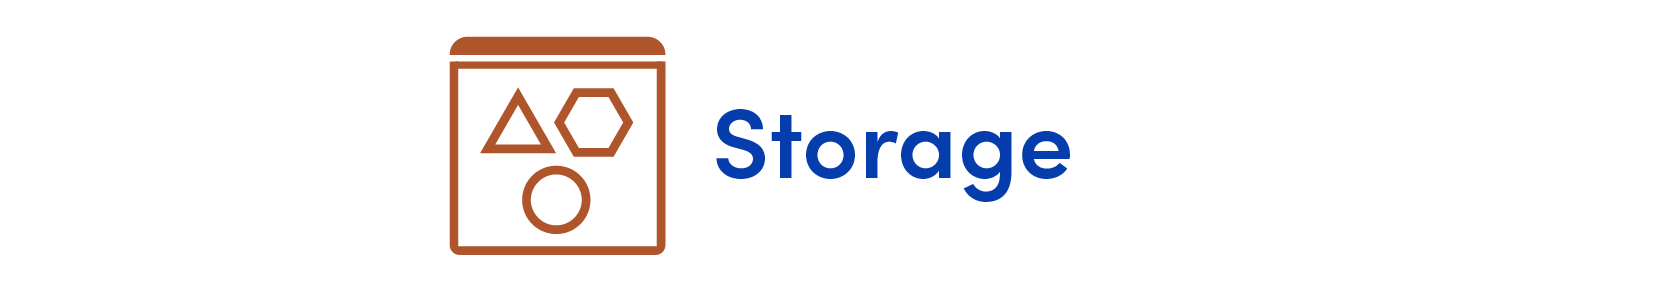 TC Web_IAAS Headings-storage